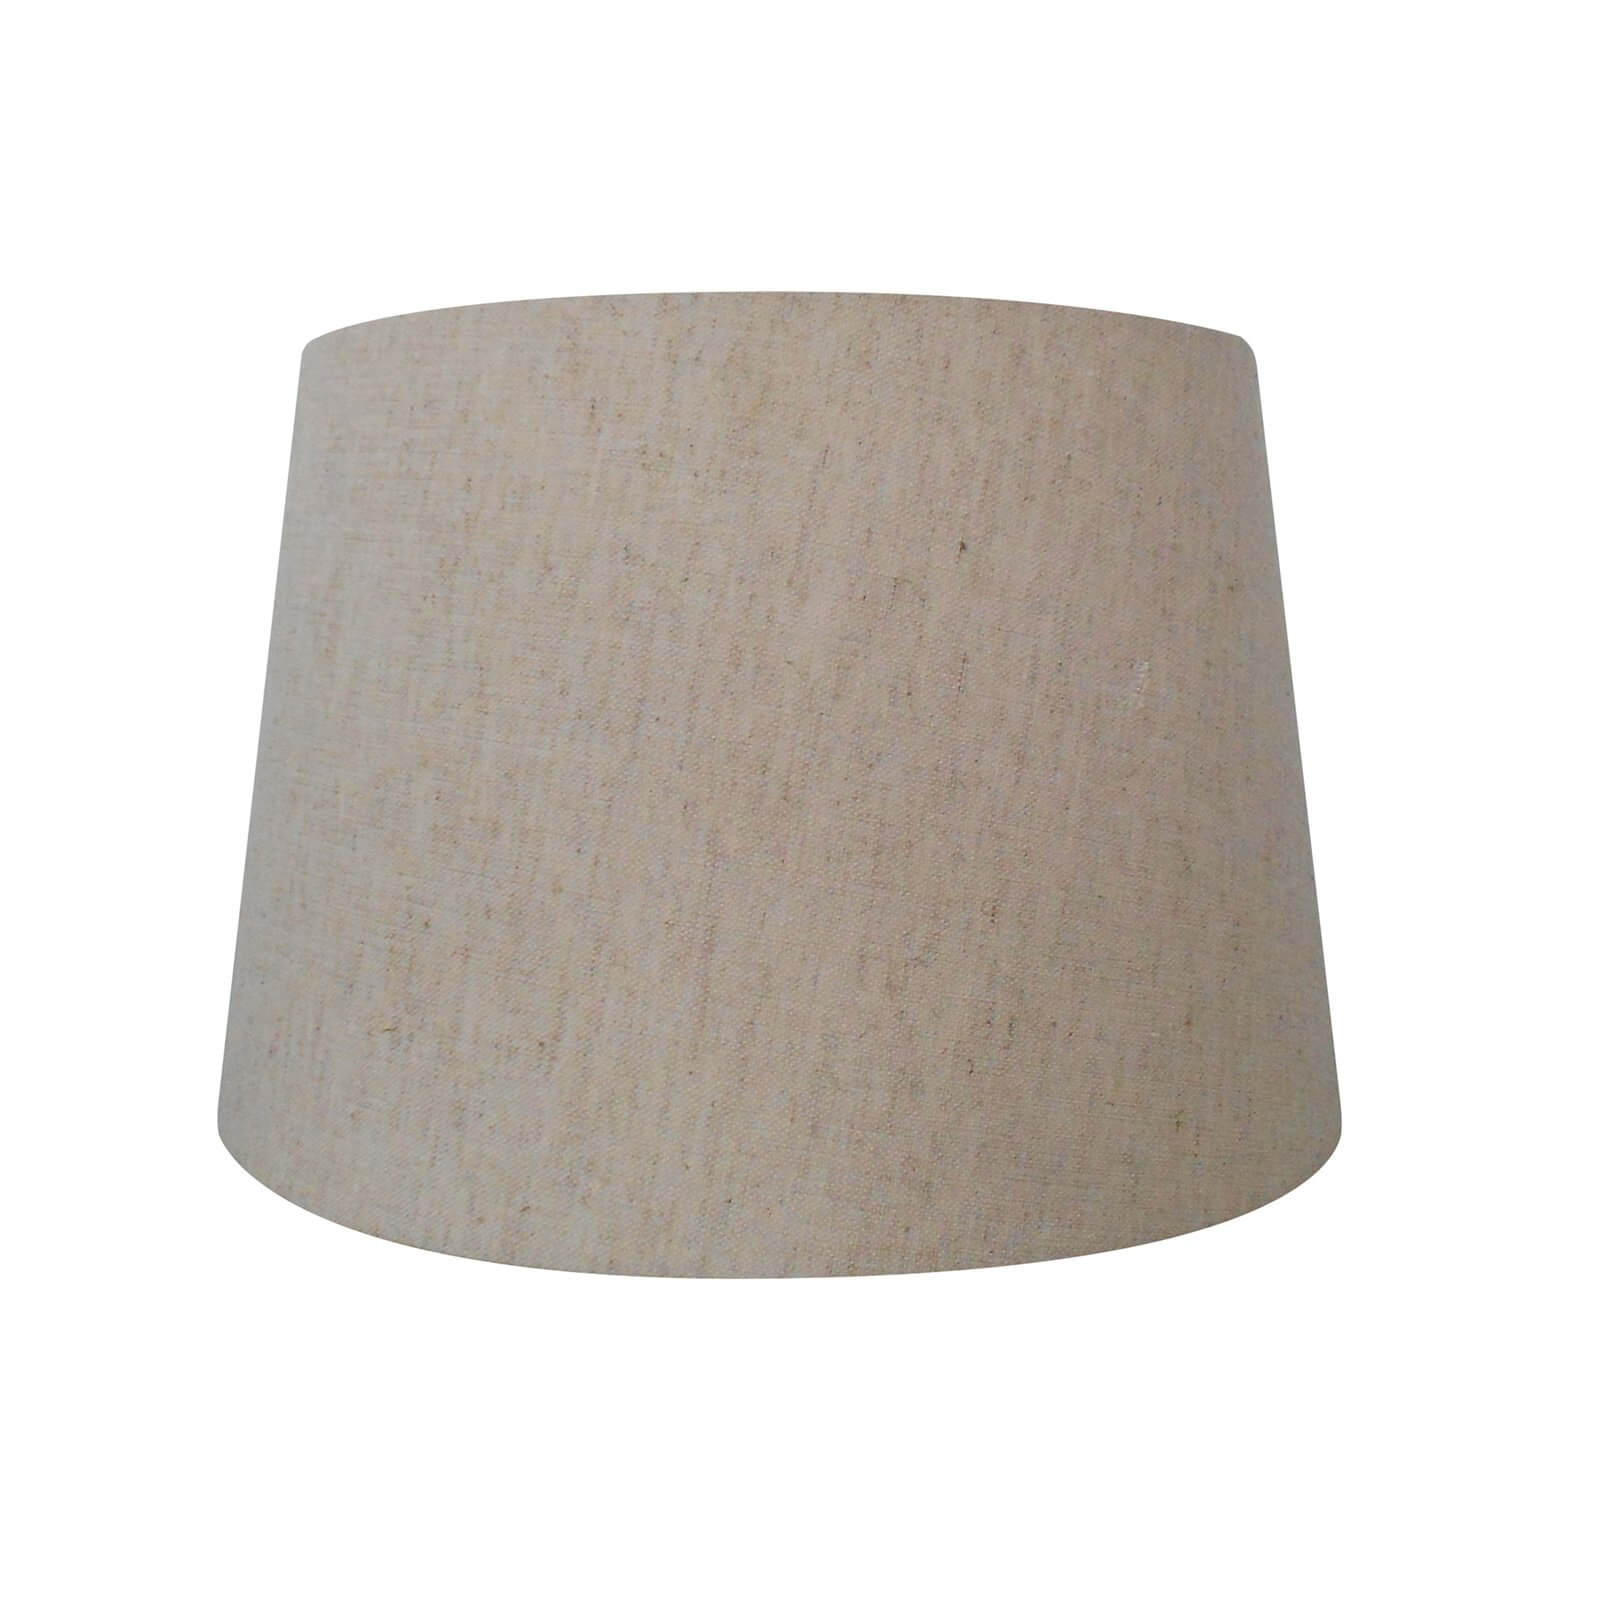 Retro Drum  Lamp Shade - Cream - 30cm